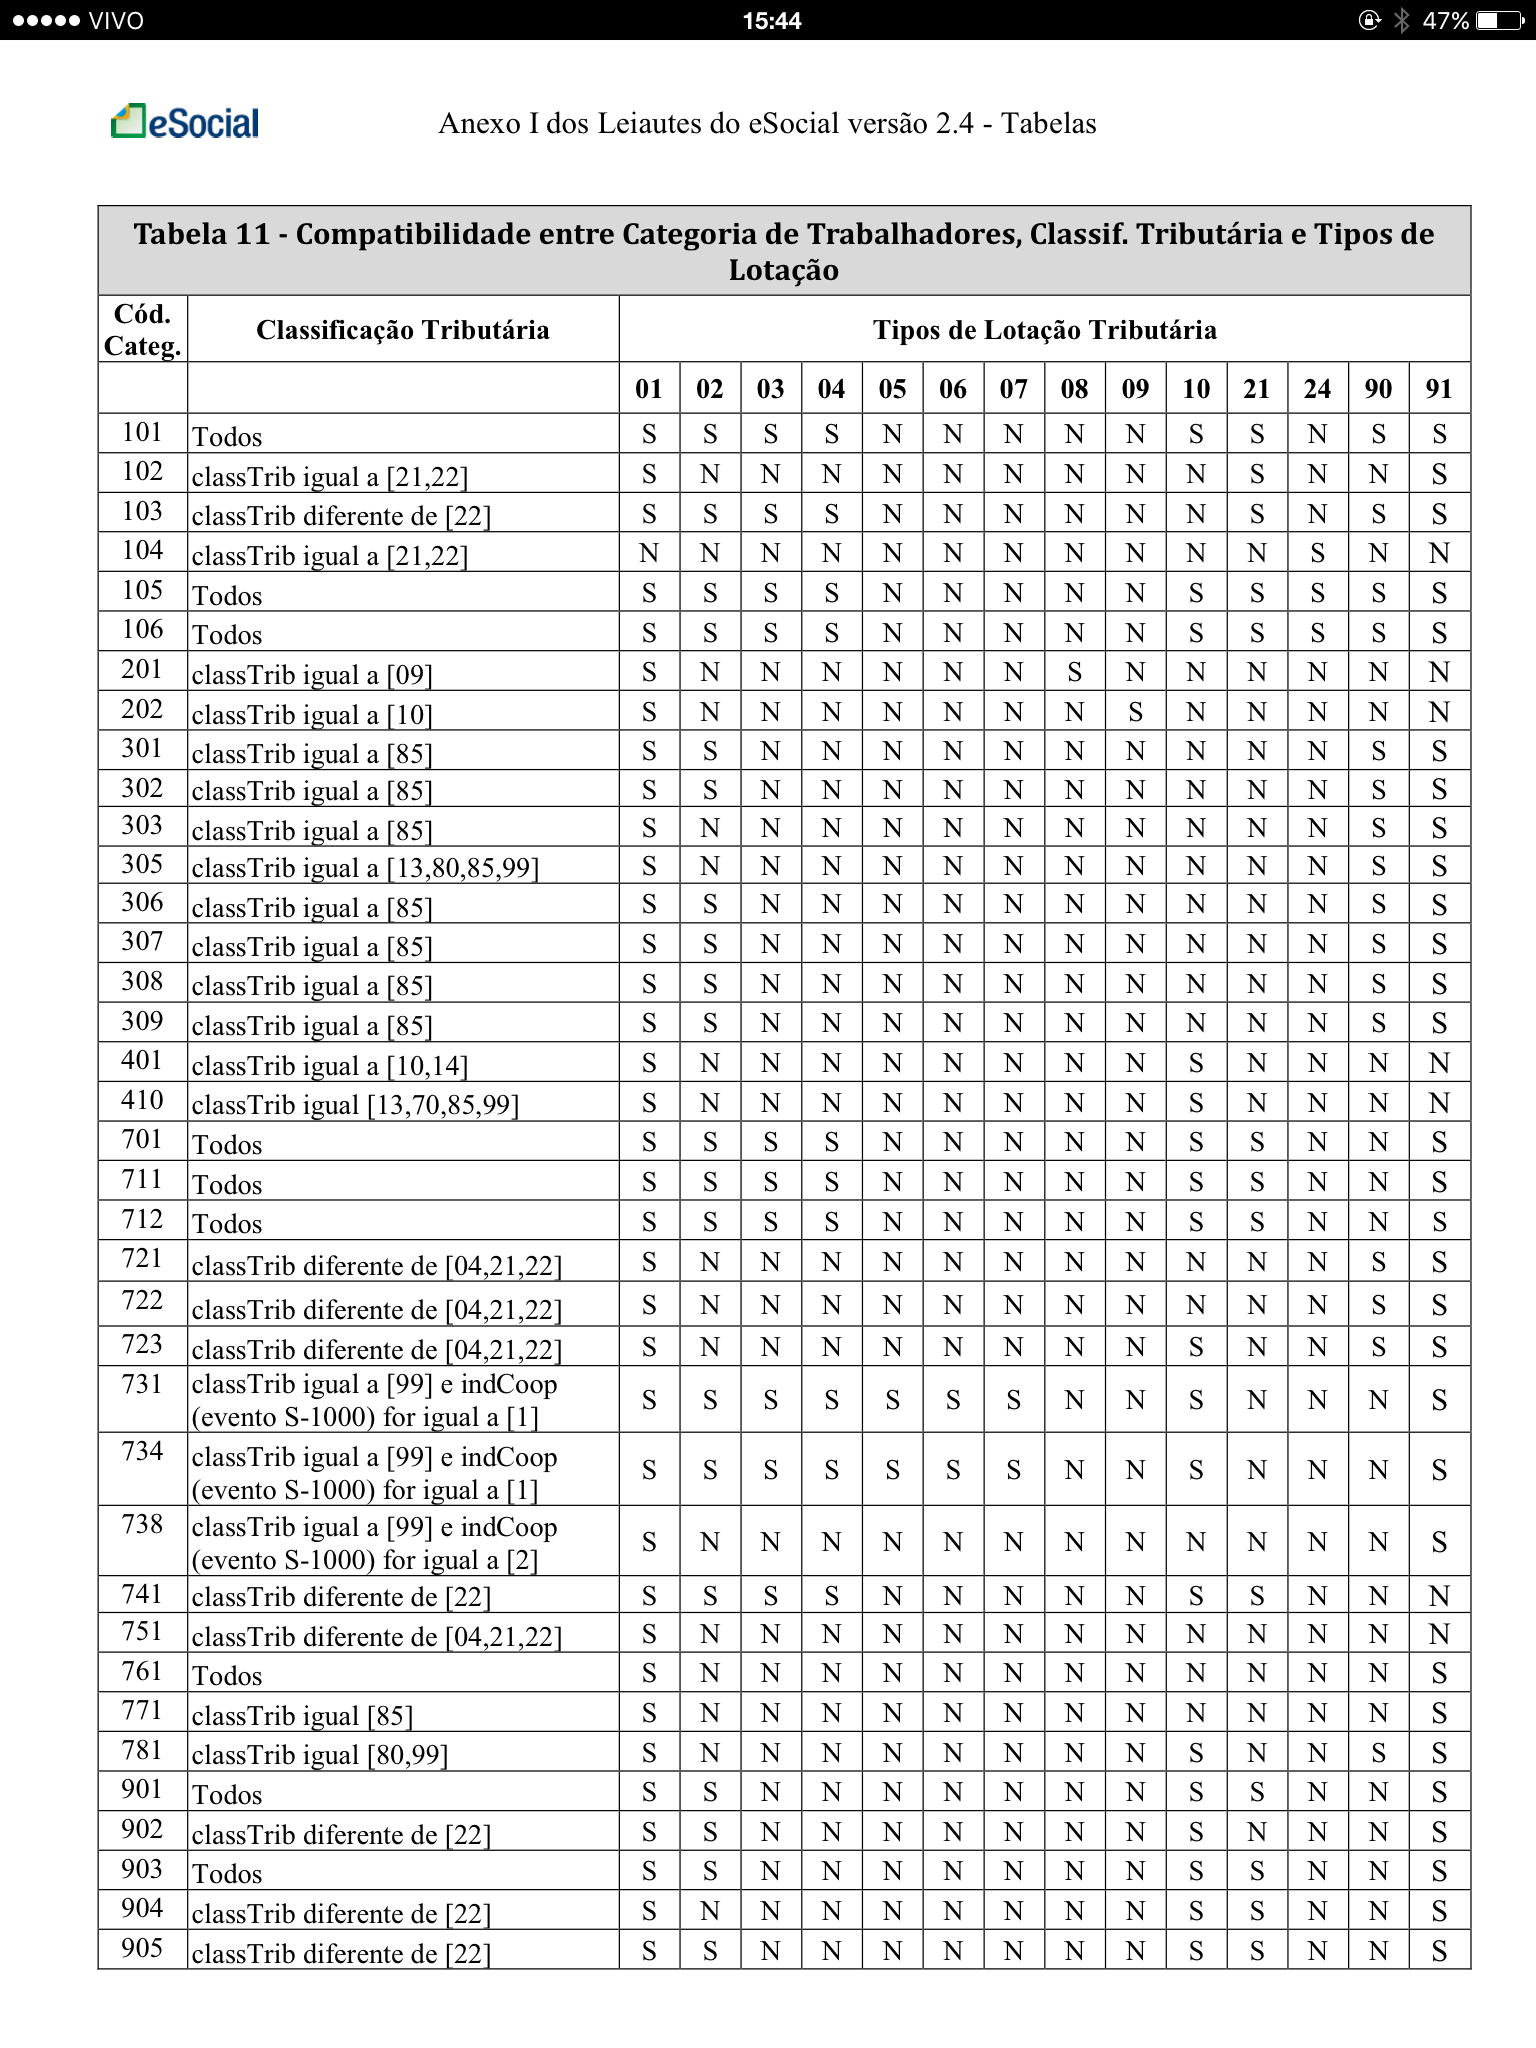 Tabela 11 - Compatibilidade entre Categoria de Trabalhadores, Classificação Tributária e Tipos de Lotação